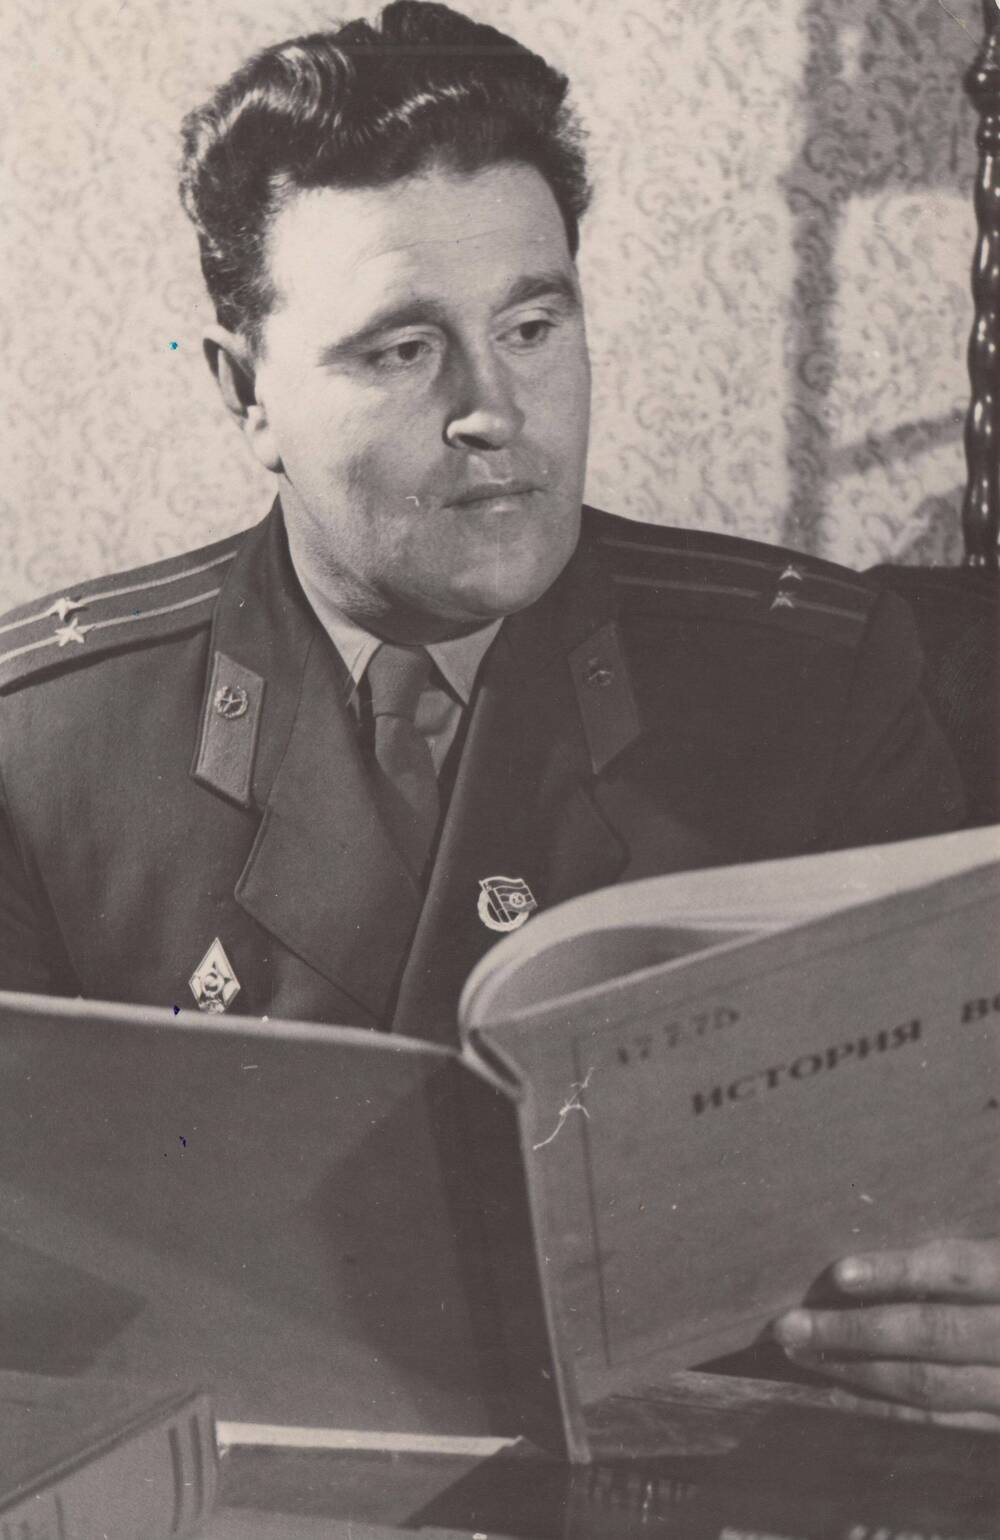 Фотография: Яшкин Григорий Петрович, бывший курсант Подольского пехотного училища, ГДР, 1960г.